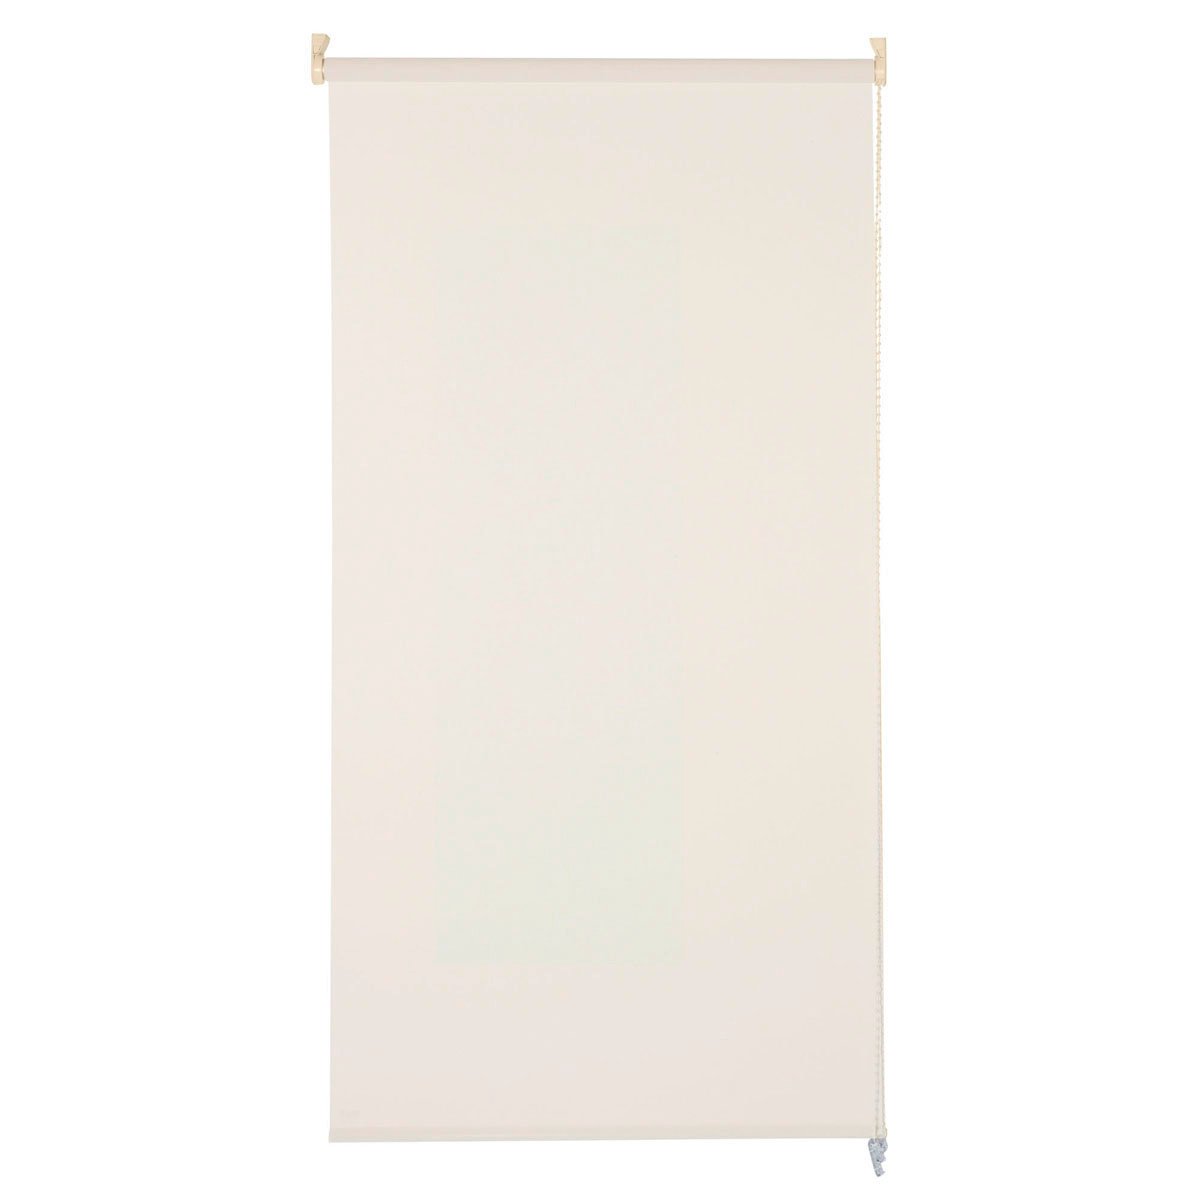 INSPIRE - zijrolgordijn zonwering - B.200 x 250 cm - WIT LINNEN - lichtbeige - raamgordijn